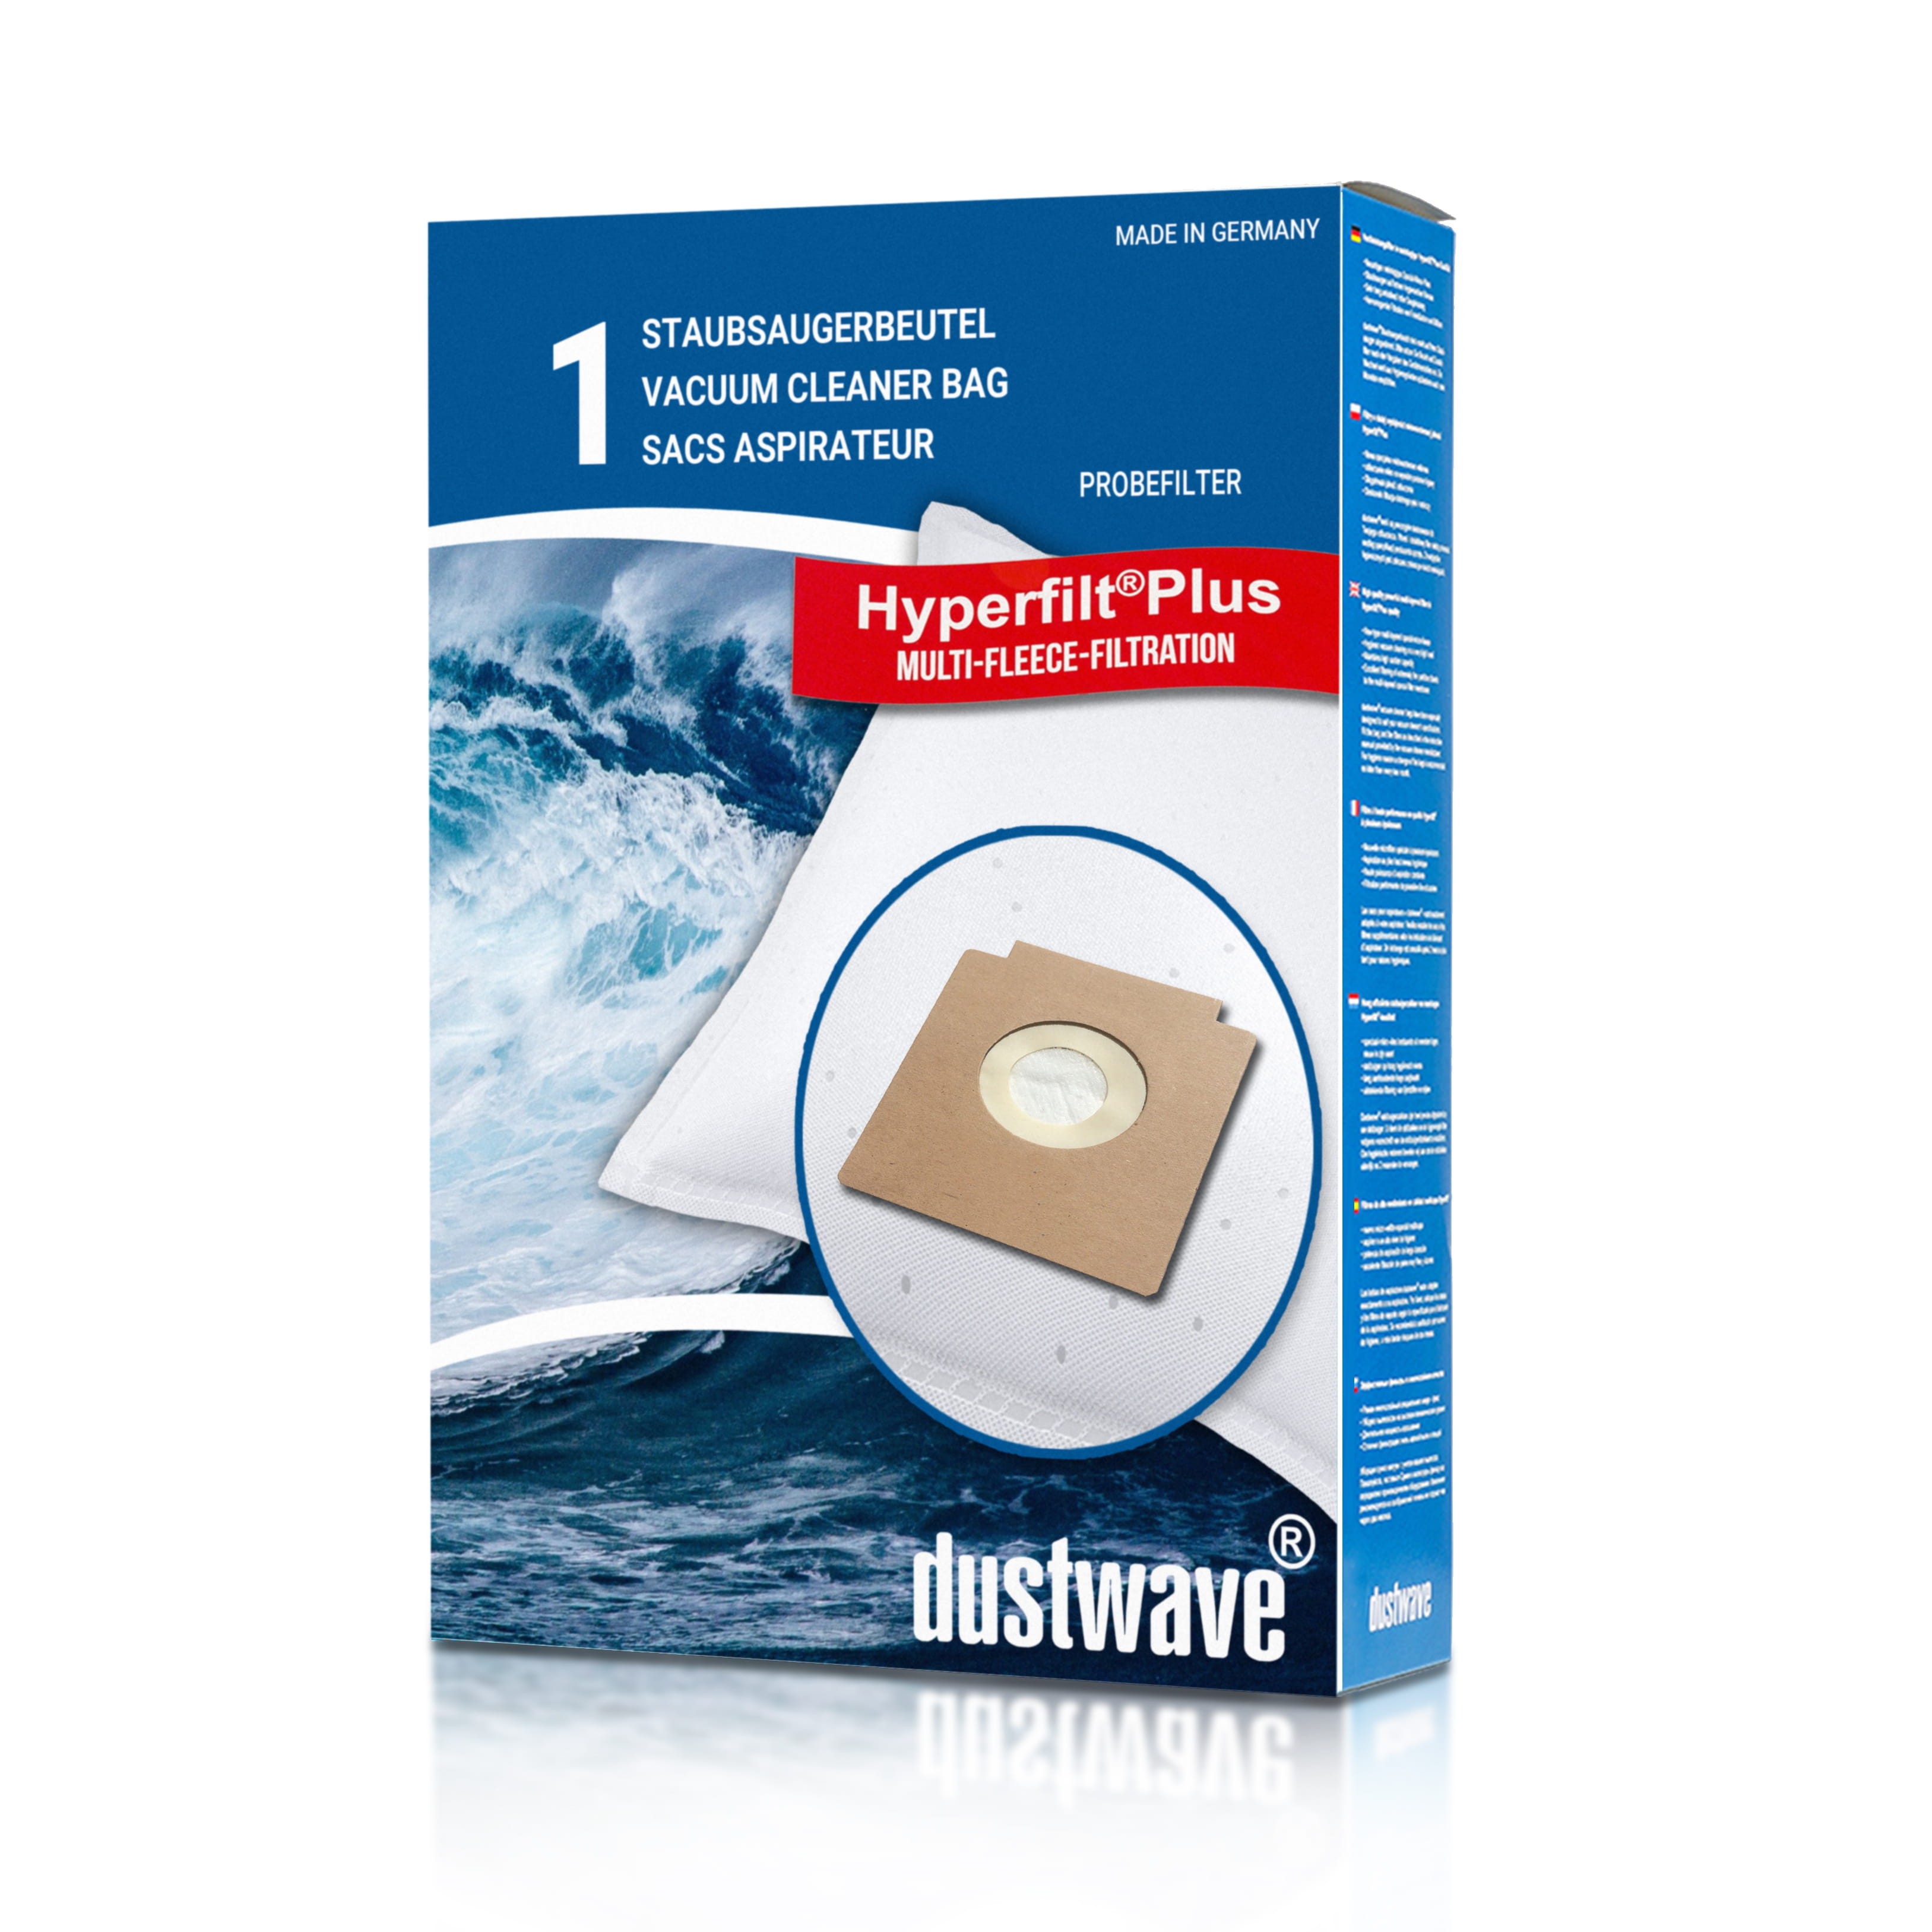 Dustwave® 1 Staubsaugerbeutel für Circon 4V14g - hocheffizient, mehrlagiges Mikrovlies mit Hygieneverschluss - Made in Germany